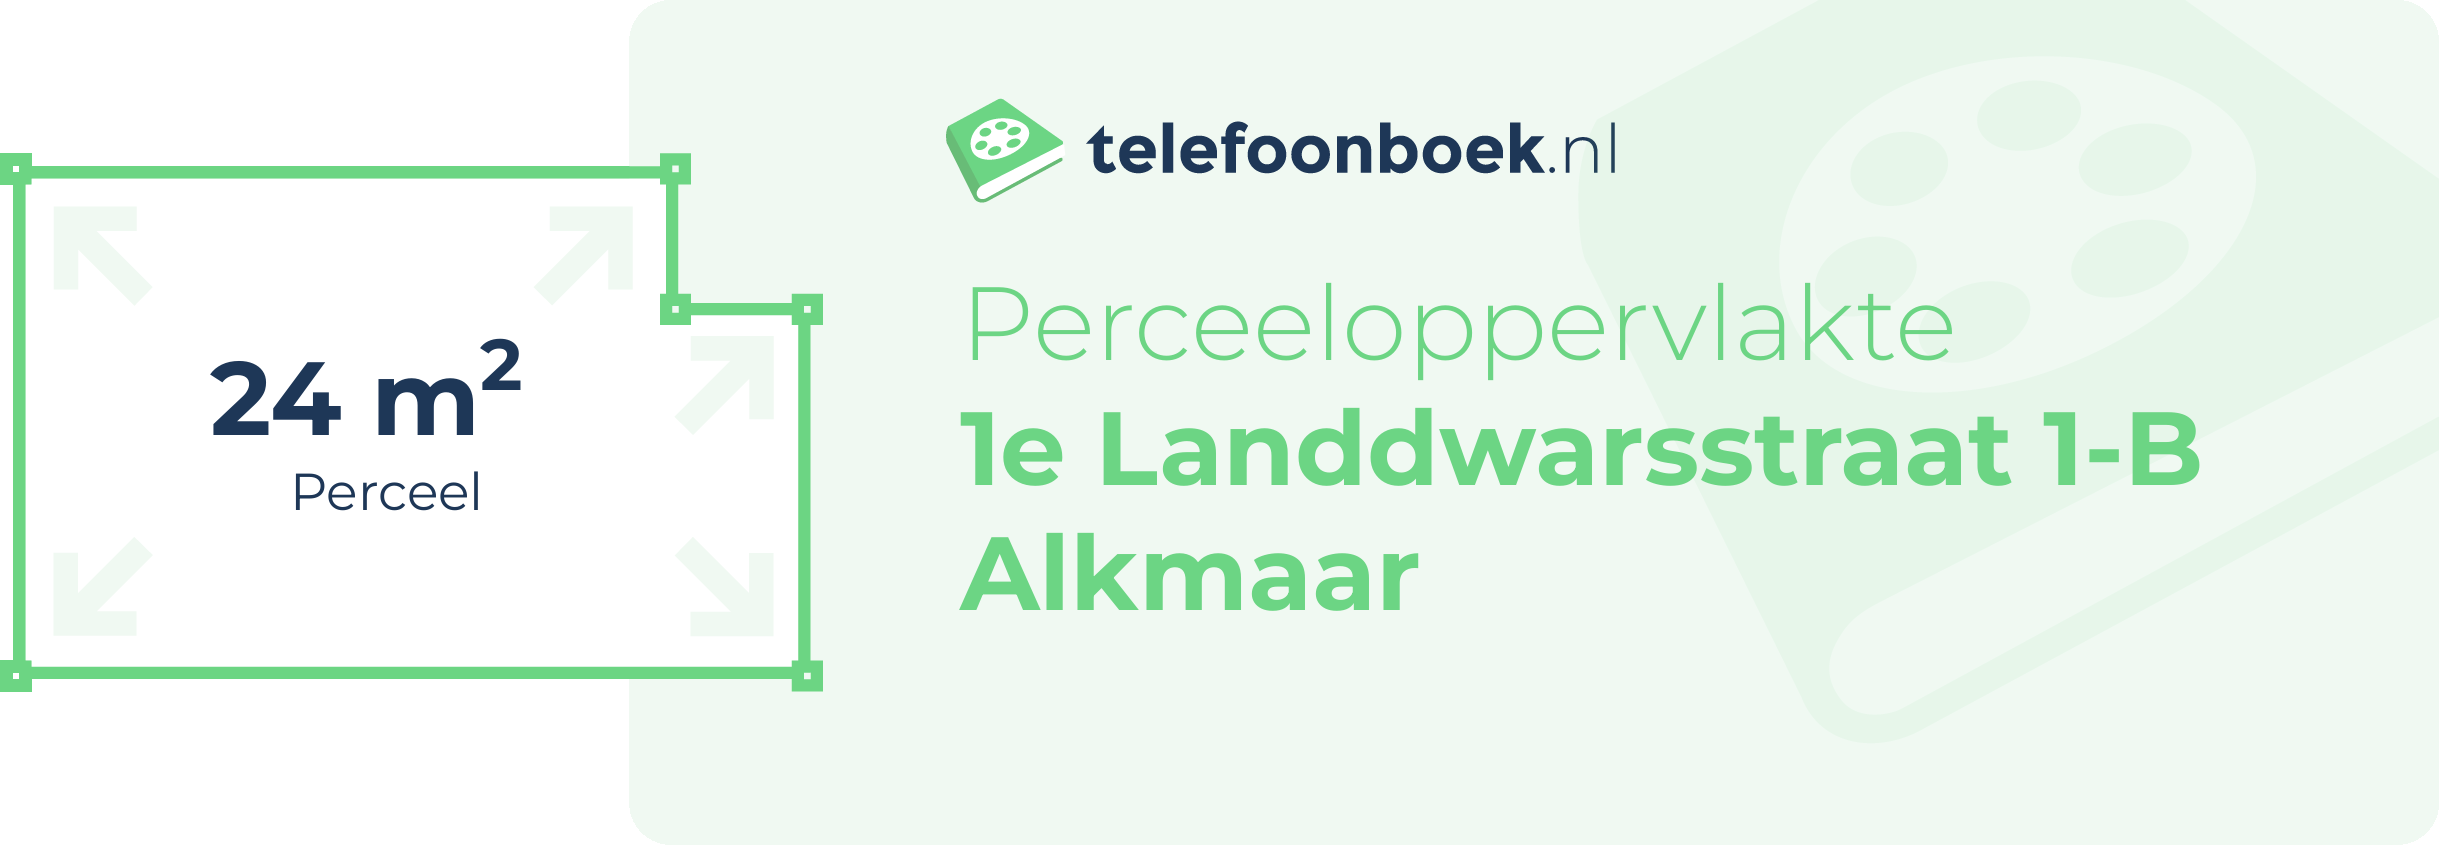 Perceeloppervlakte 1e Landdwarsstraat 1-B Alkmaar